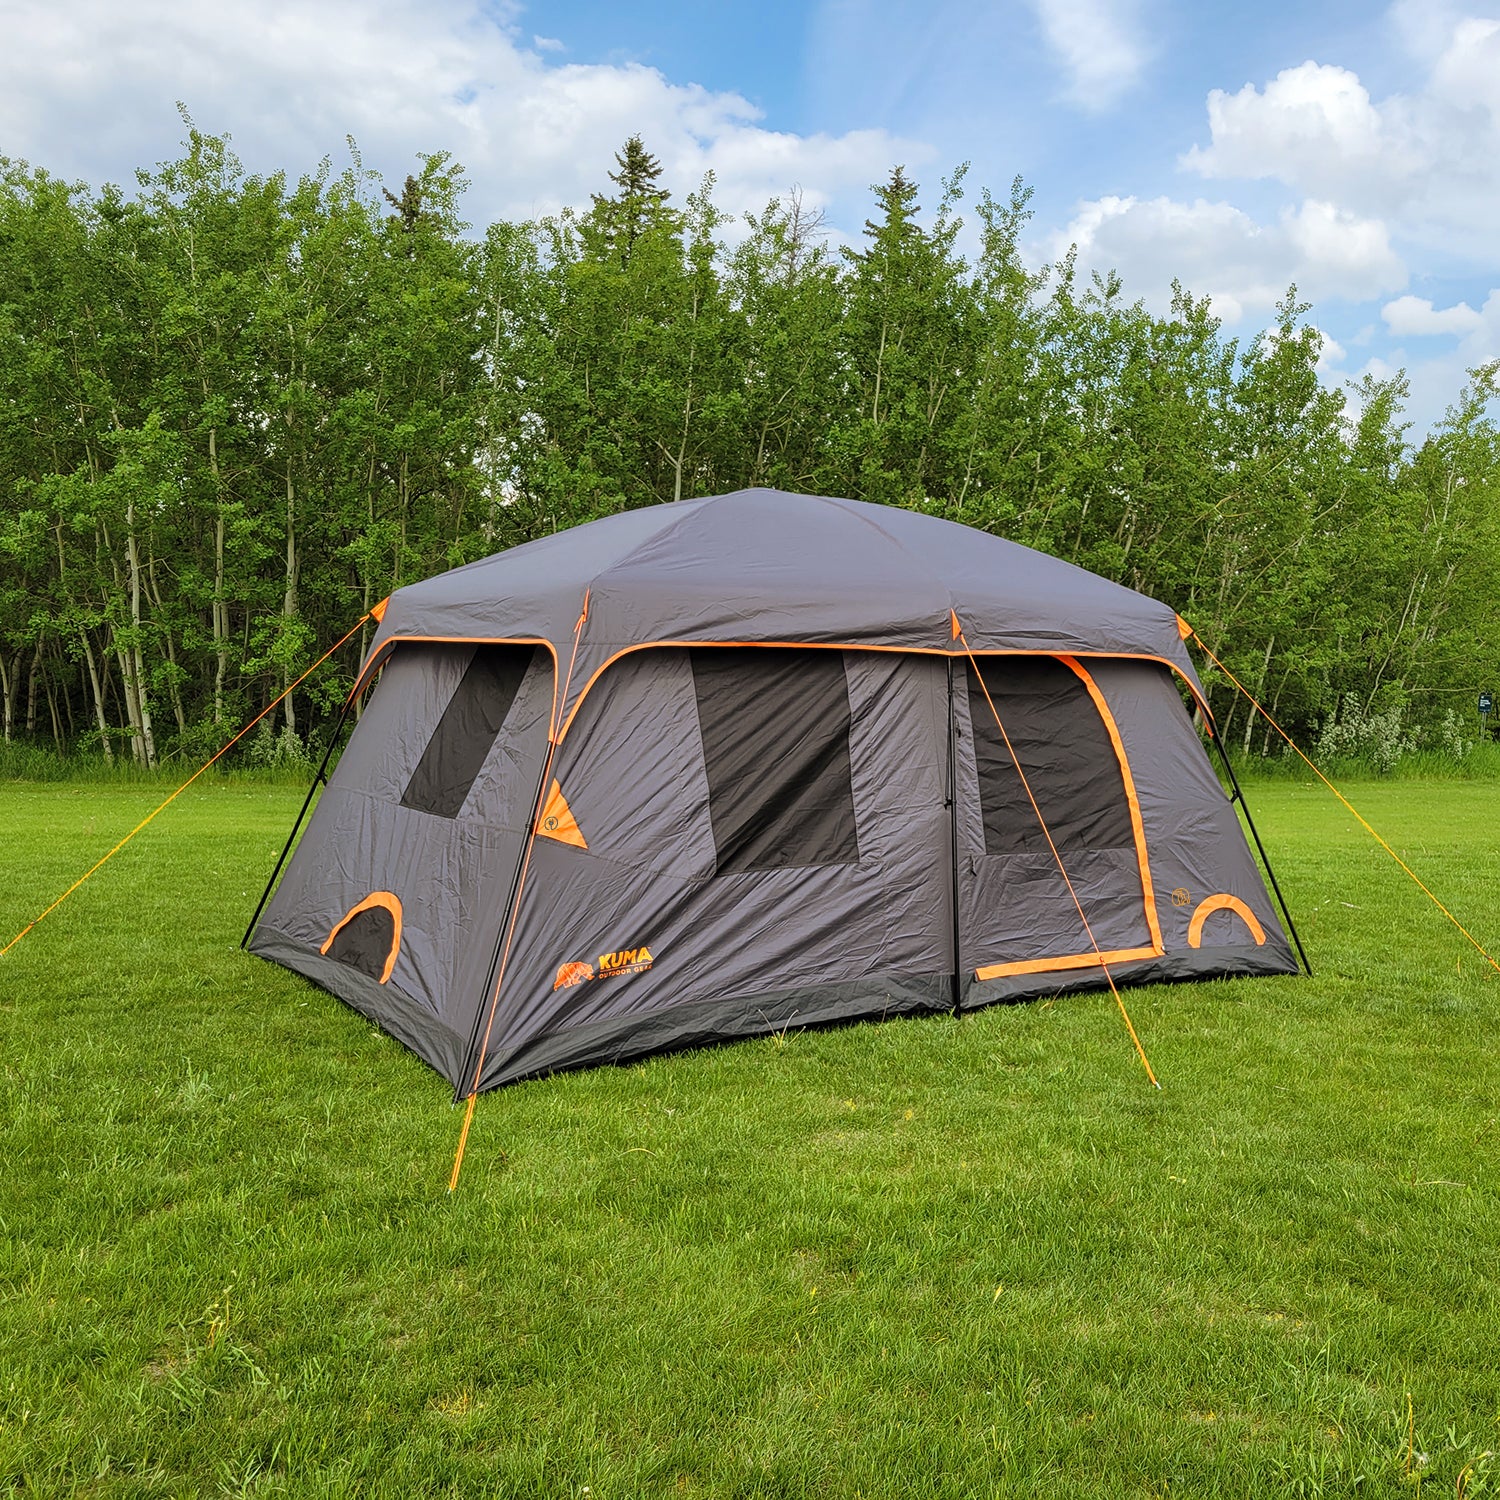 Kuma Outdoor Gear Bear Den 9 Cabin Tent